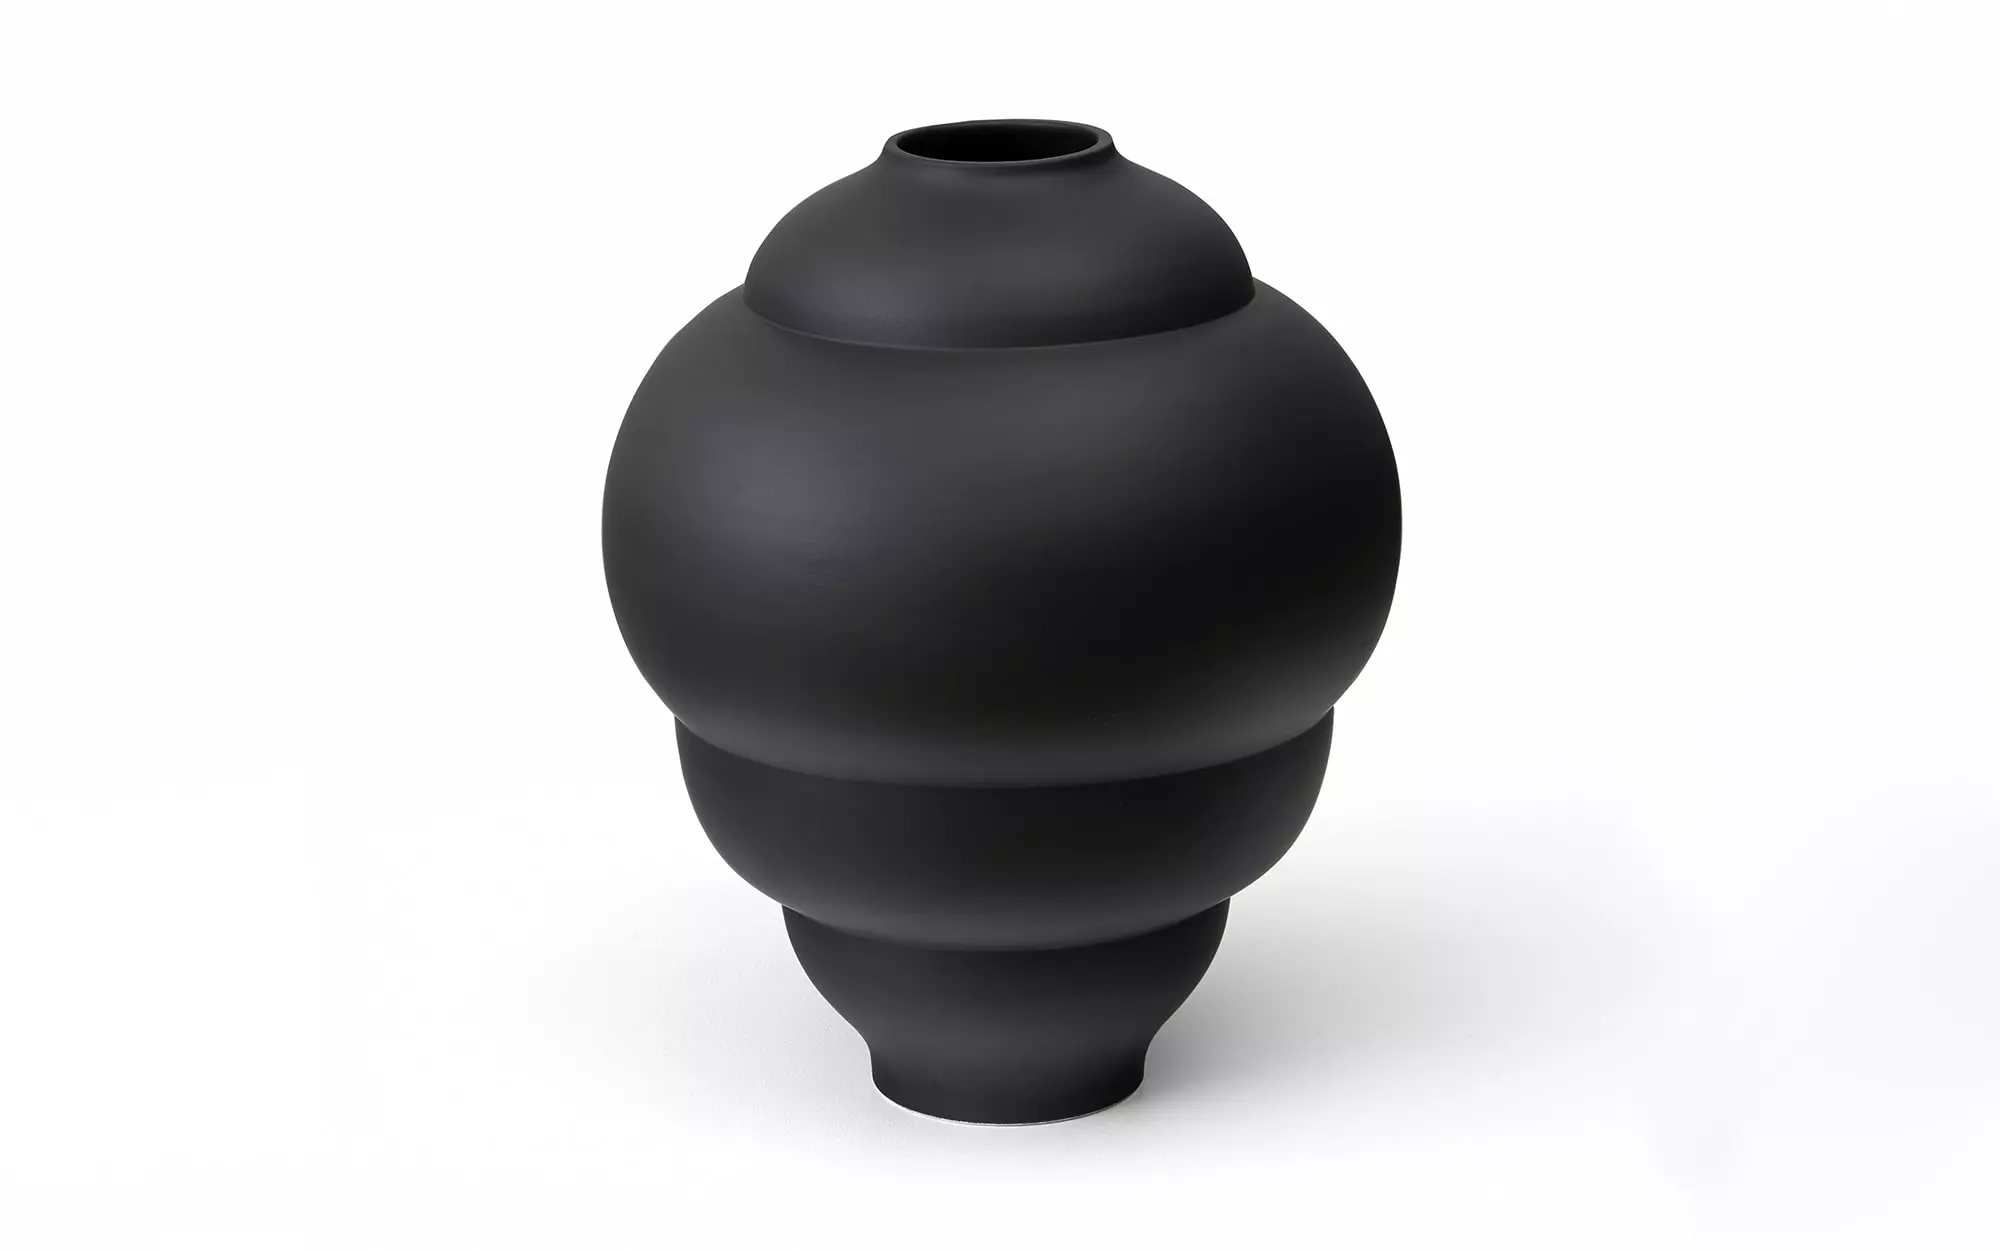 Plump - 3 Vase - Pierre Charpin - Coffee table - Galerie kreo